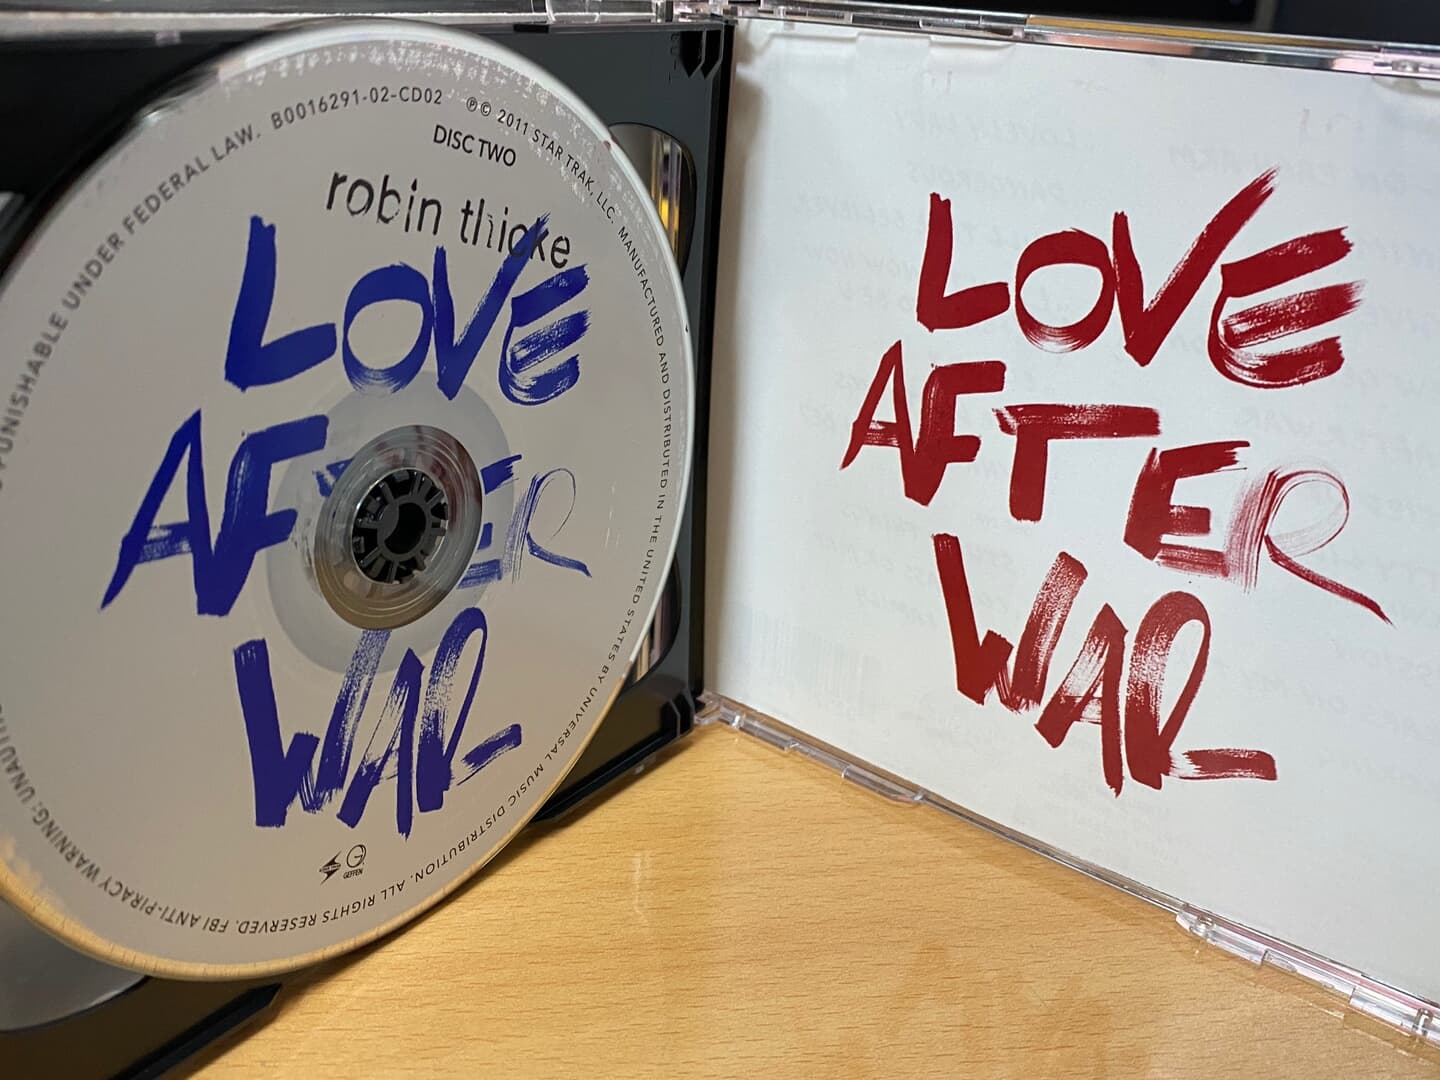 로빈 시크 - Robin Thicke - Love After War 2Cds [D.E] [U.S발매]